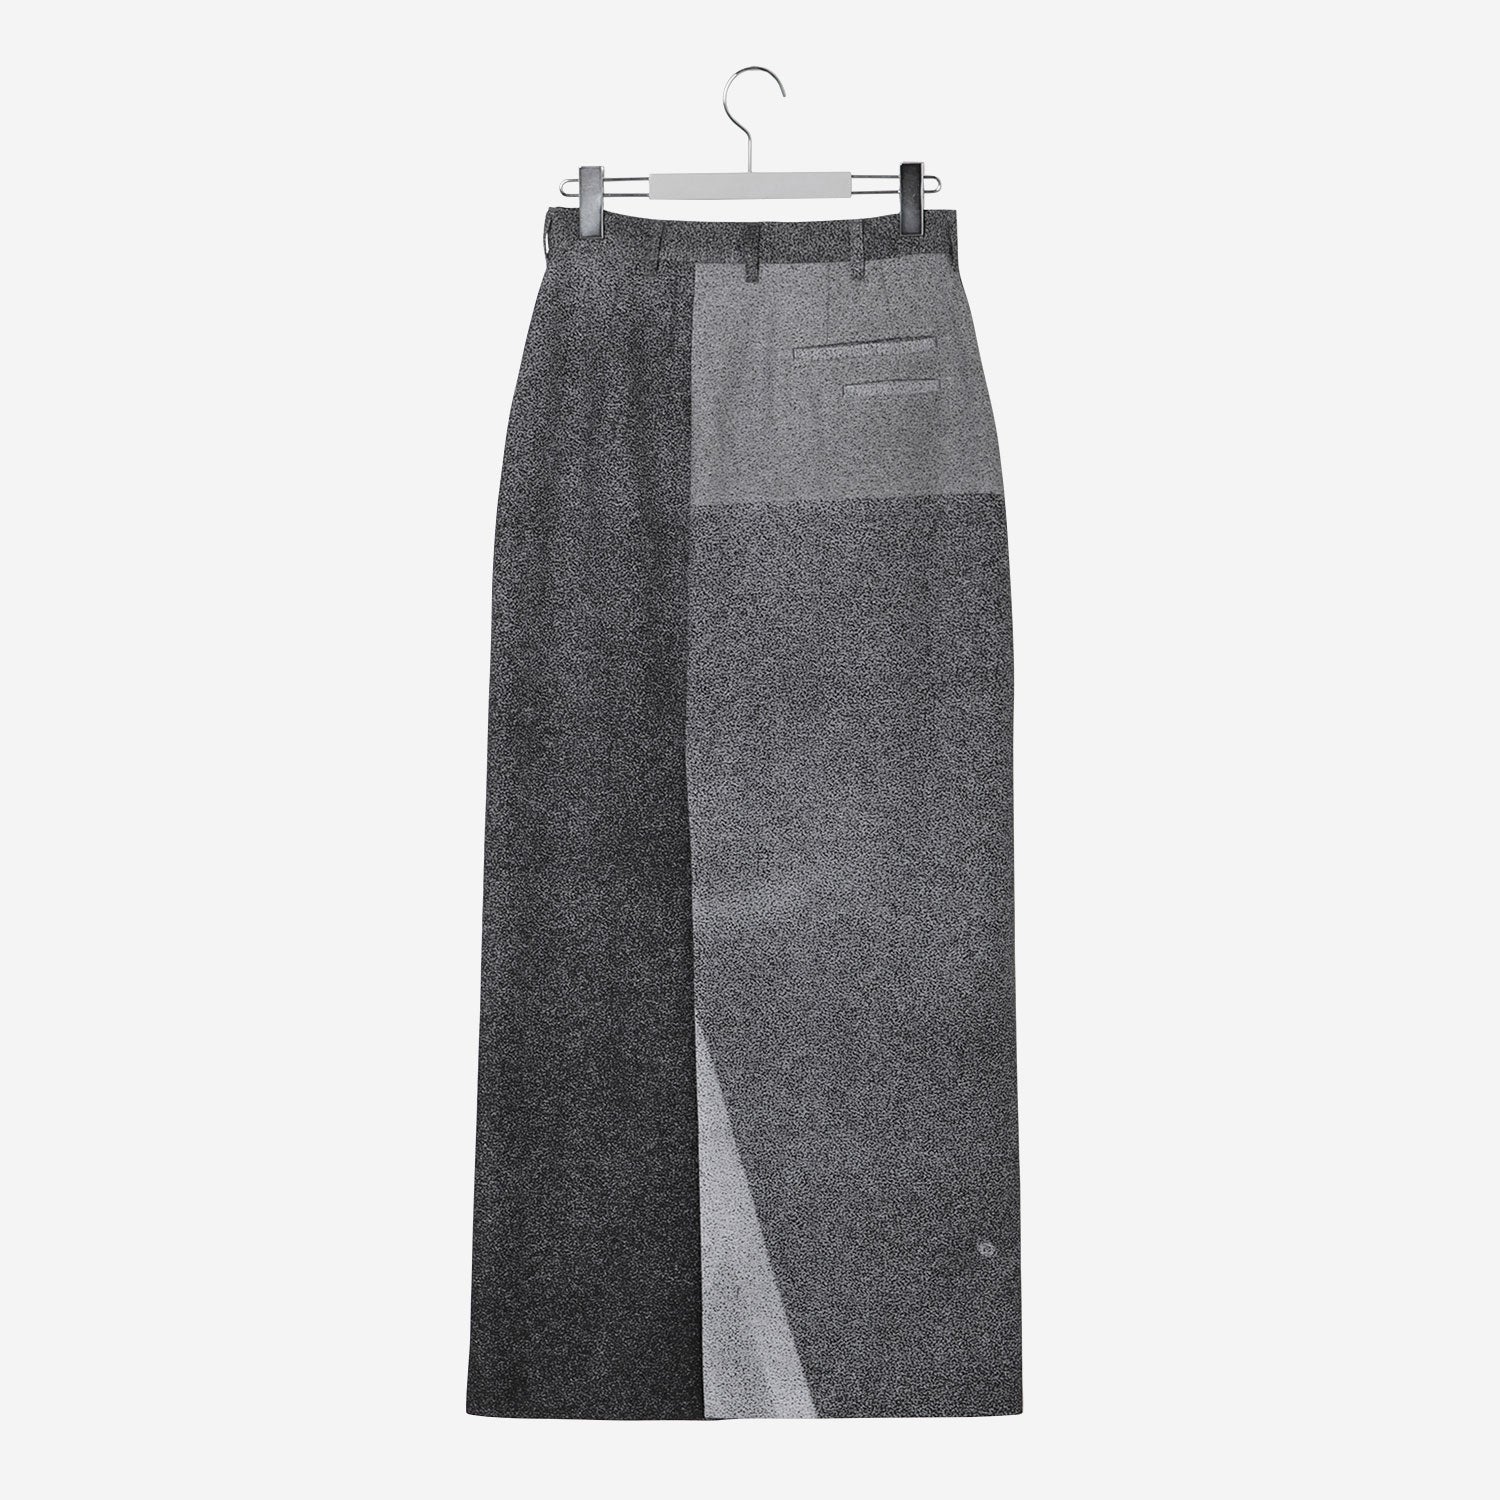 Long Open Skirt / black site